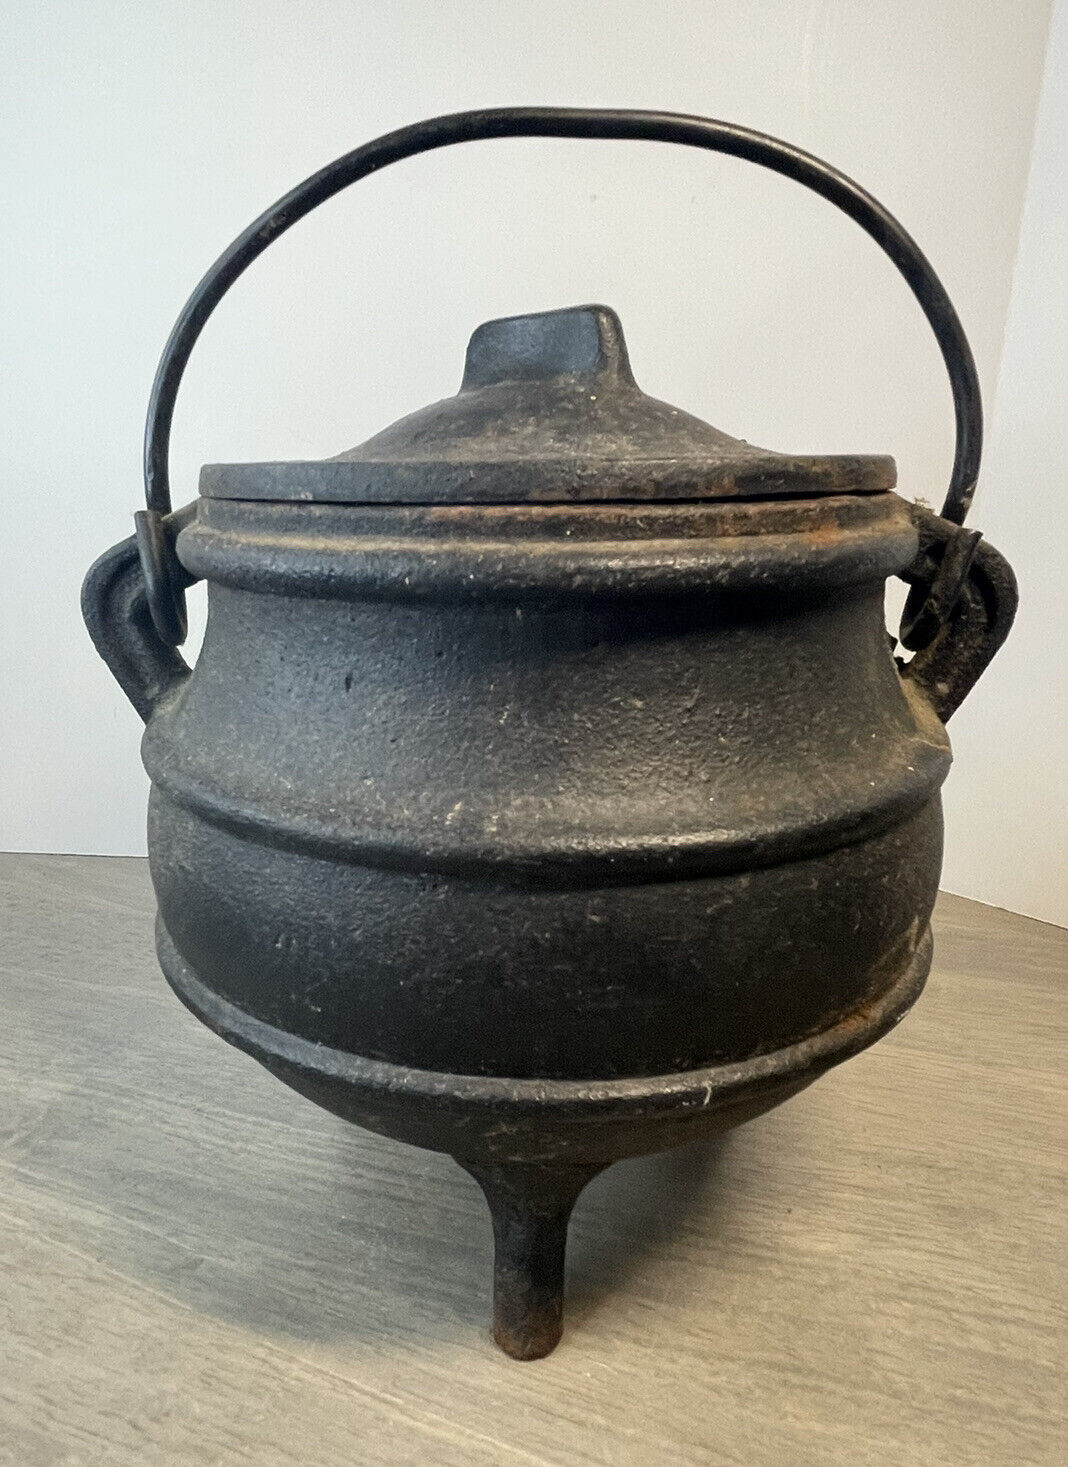 Antique Cast Iron Pot Cauldron W/ Lid And Handle 3 Legs 5.5" | Ebay